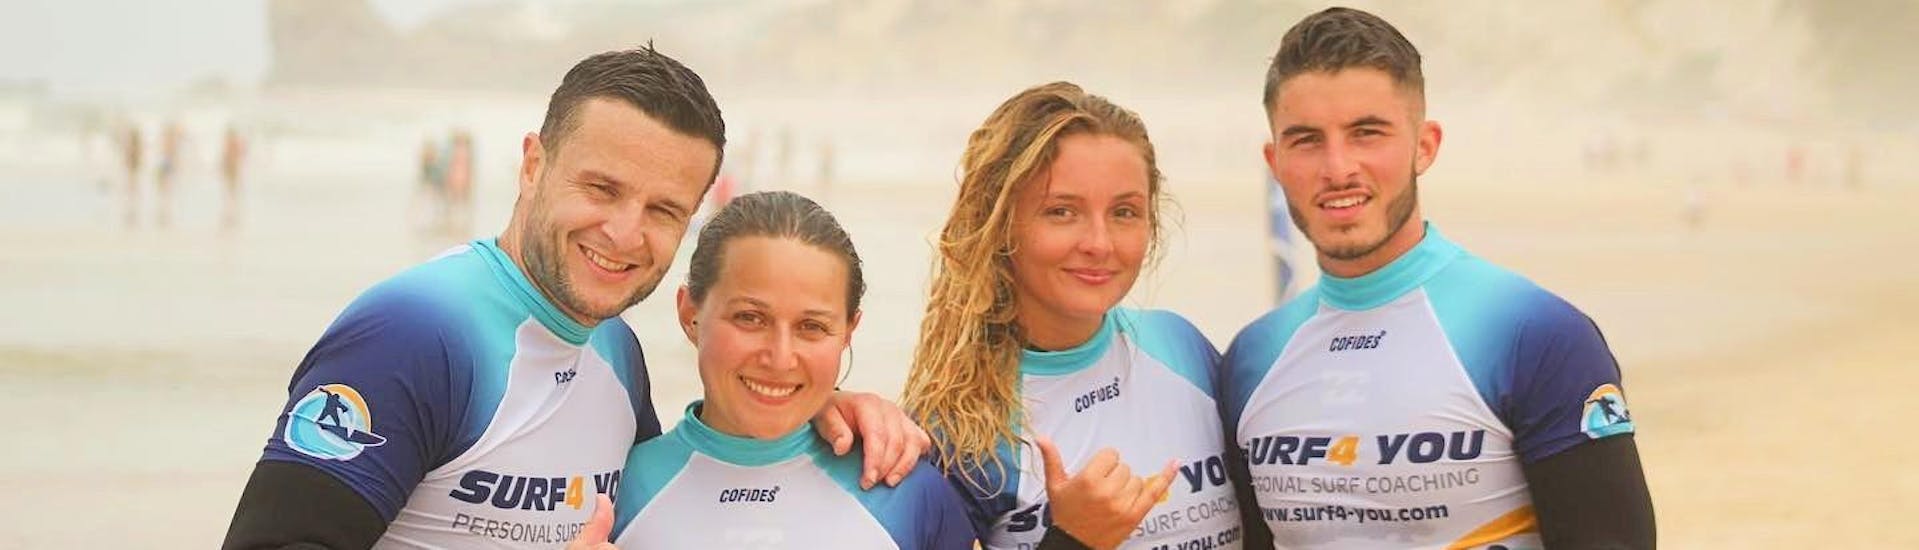 Während des Surfkurses von Surf4You in Nazaré haben die Teilnehmer viel Spaß und lächeln in die Kamera.